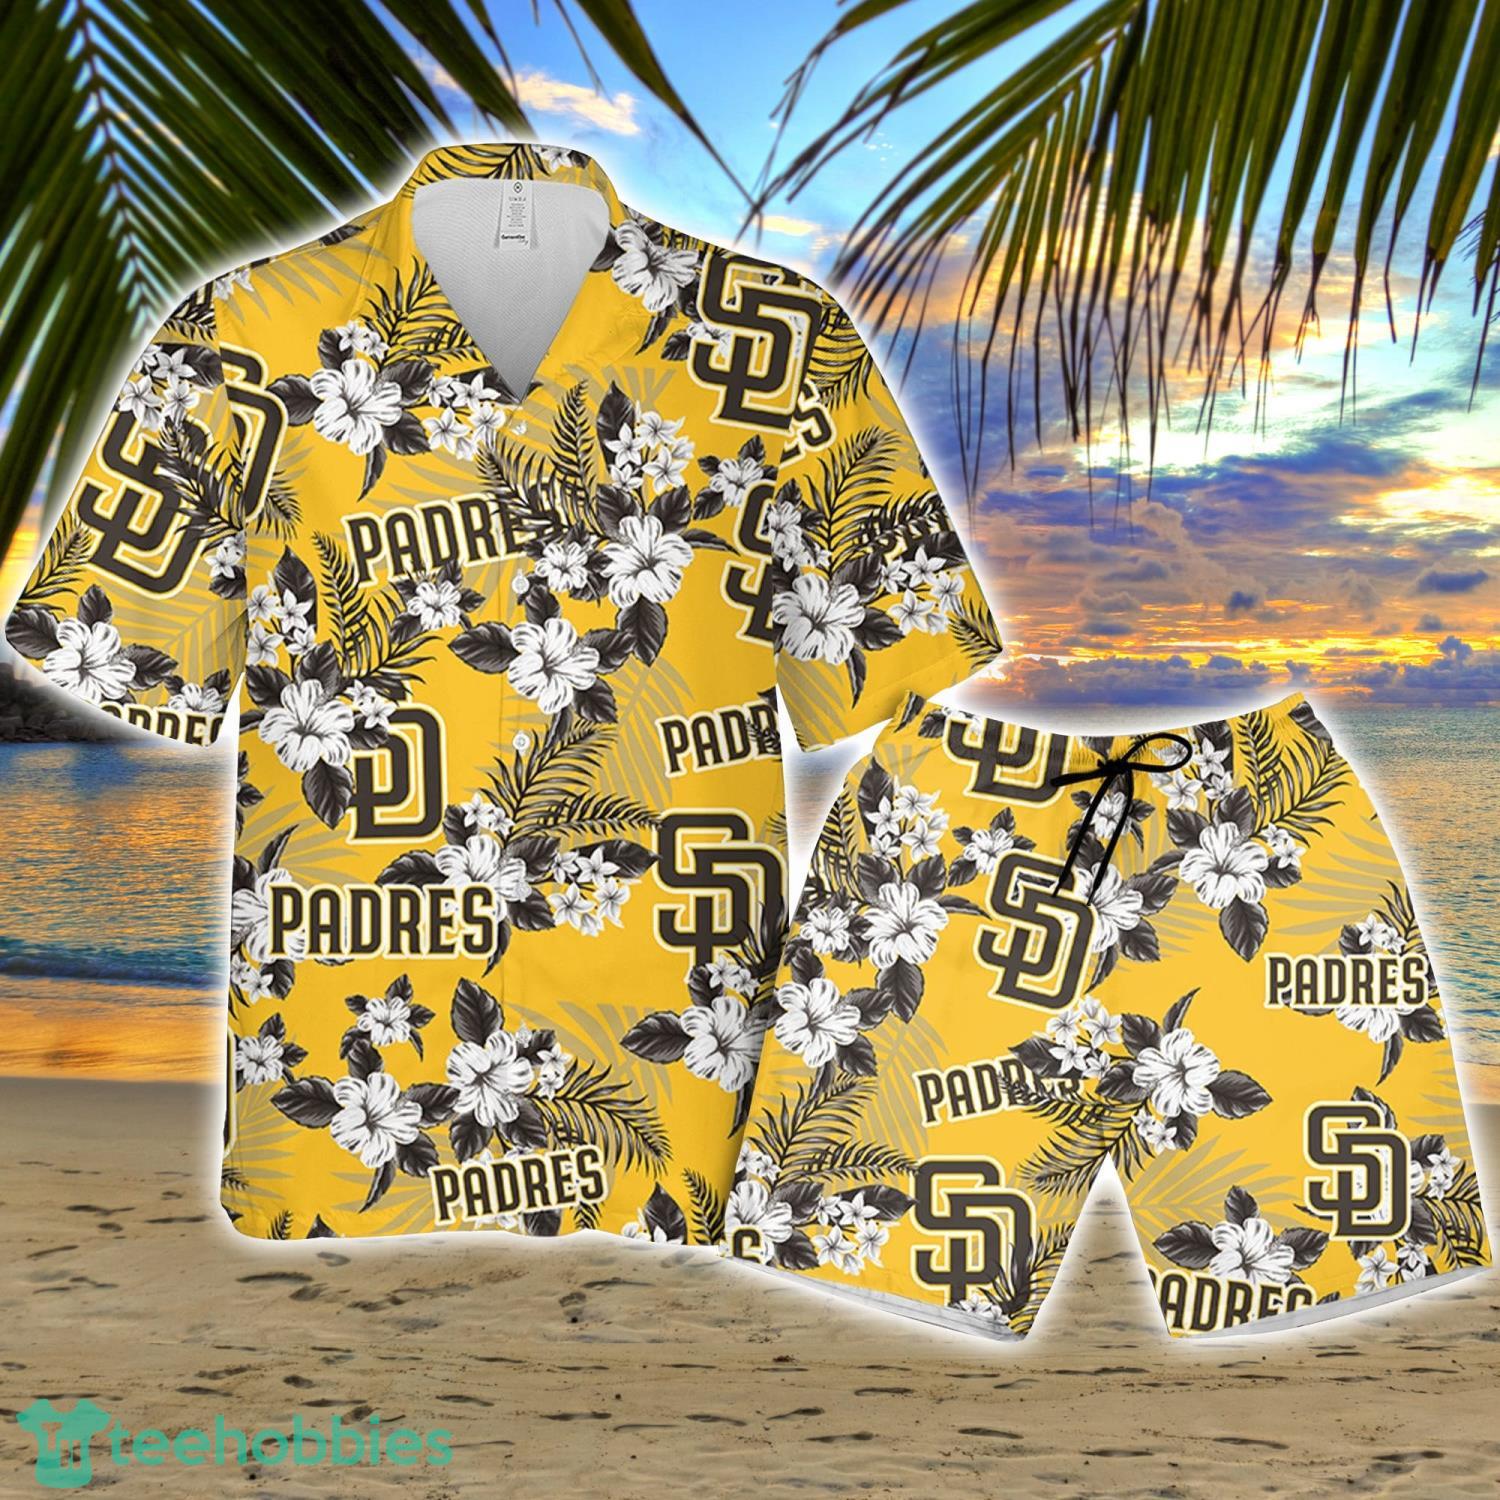 Padres Hawaiian Shirt Giveaway San Diego Padres Mlb Best Hawaiian